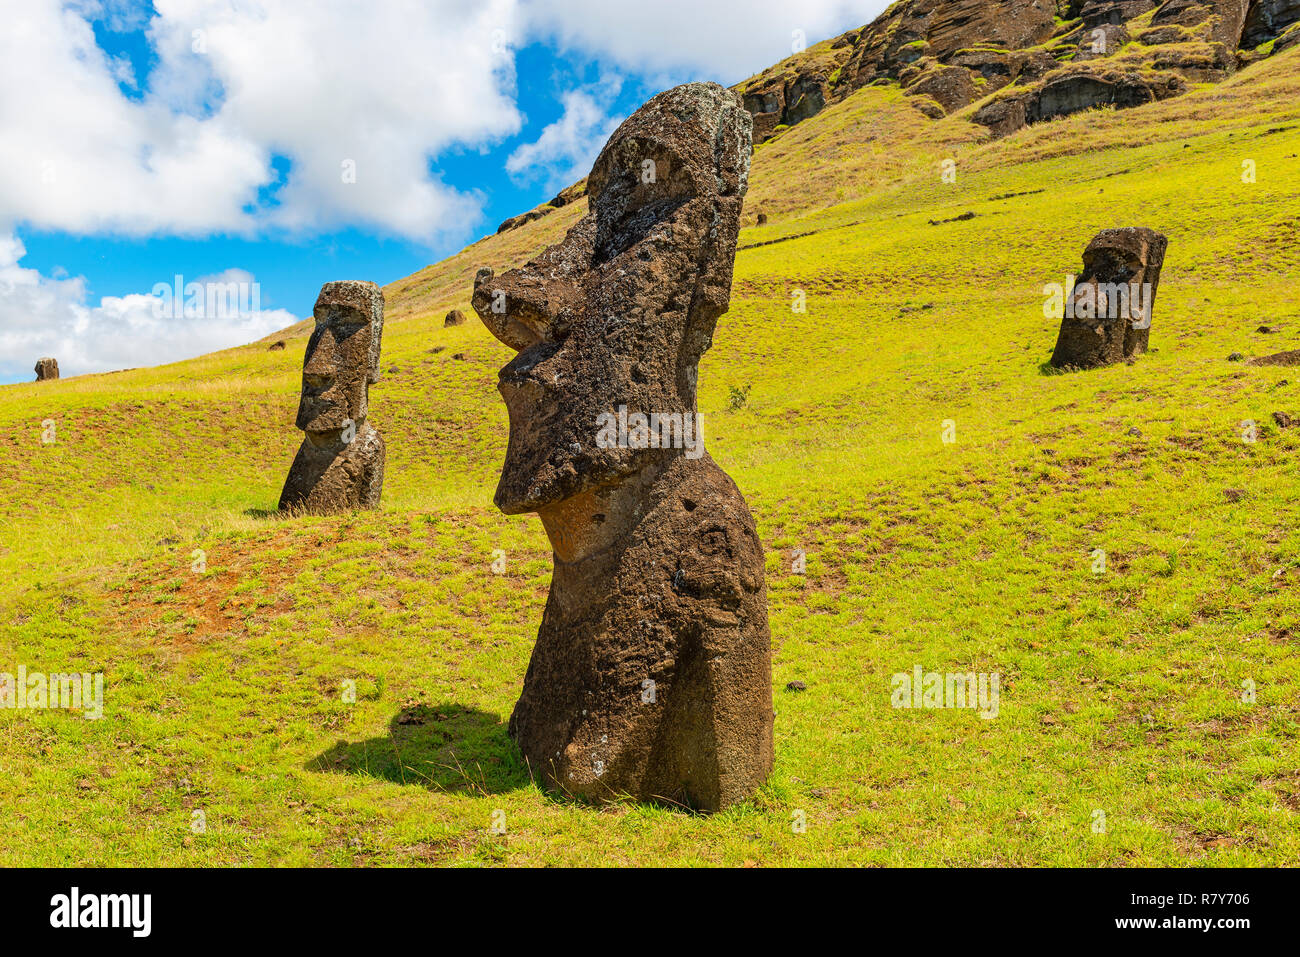 Las estatuas moai de Rano Raraku que no llegaron nunca a su plataforma o Ahu en la isla de Rapa Nui (Isla de Pascua) en el Océano Pacífico, Chile. Foto de stock